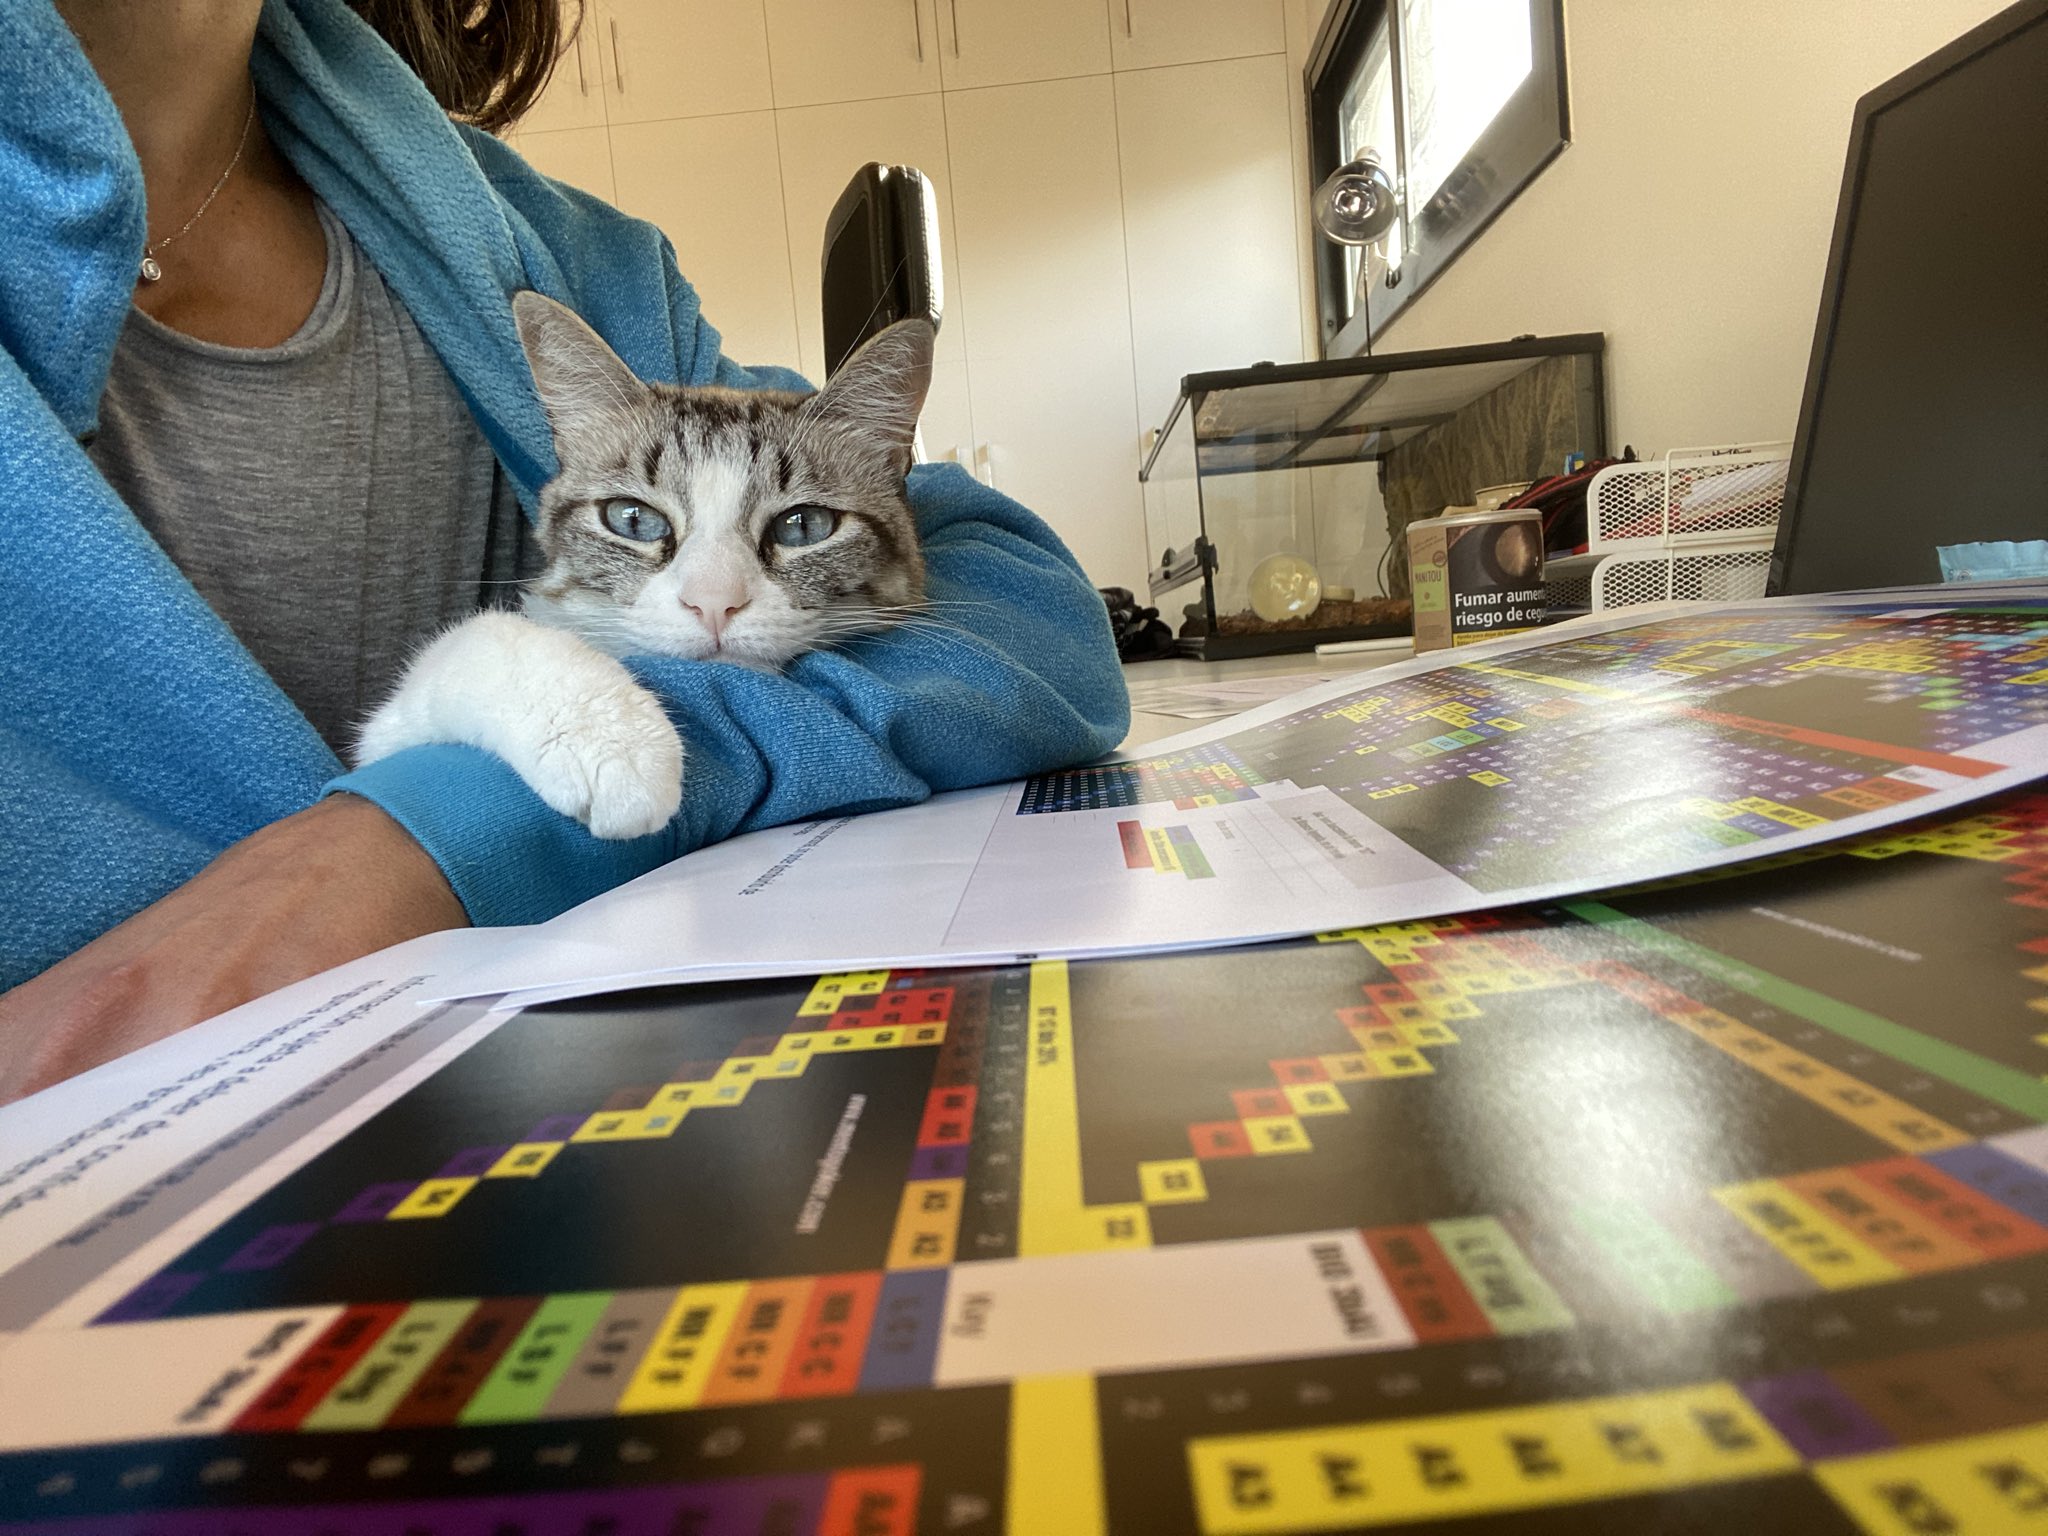 Accidentalmente Melancolía Comprometido Leo Margets on Twitter: "Cuando a tu gato le mola estudiar tablitas más que  a ti 😅 https://t.co/U8CnG0MDrr" / Twitter